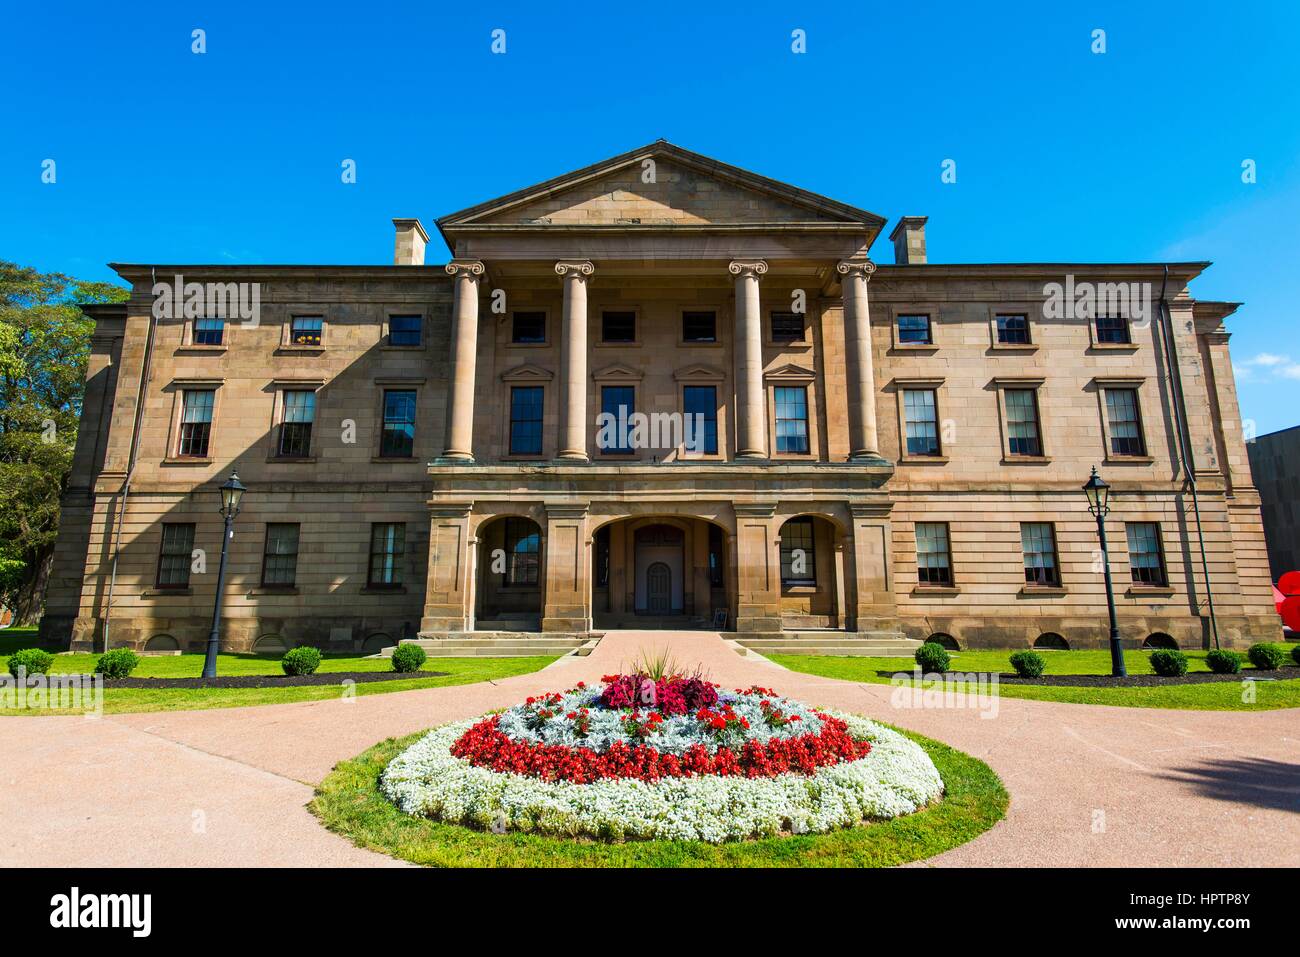 Édifice du gouvernement de l'historique de 1847 Province House, Charlottetown, capitale de la province de l'Île du Prince Édouard, Canada Banque D'Images